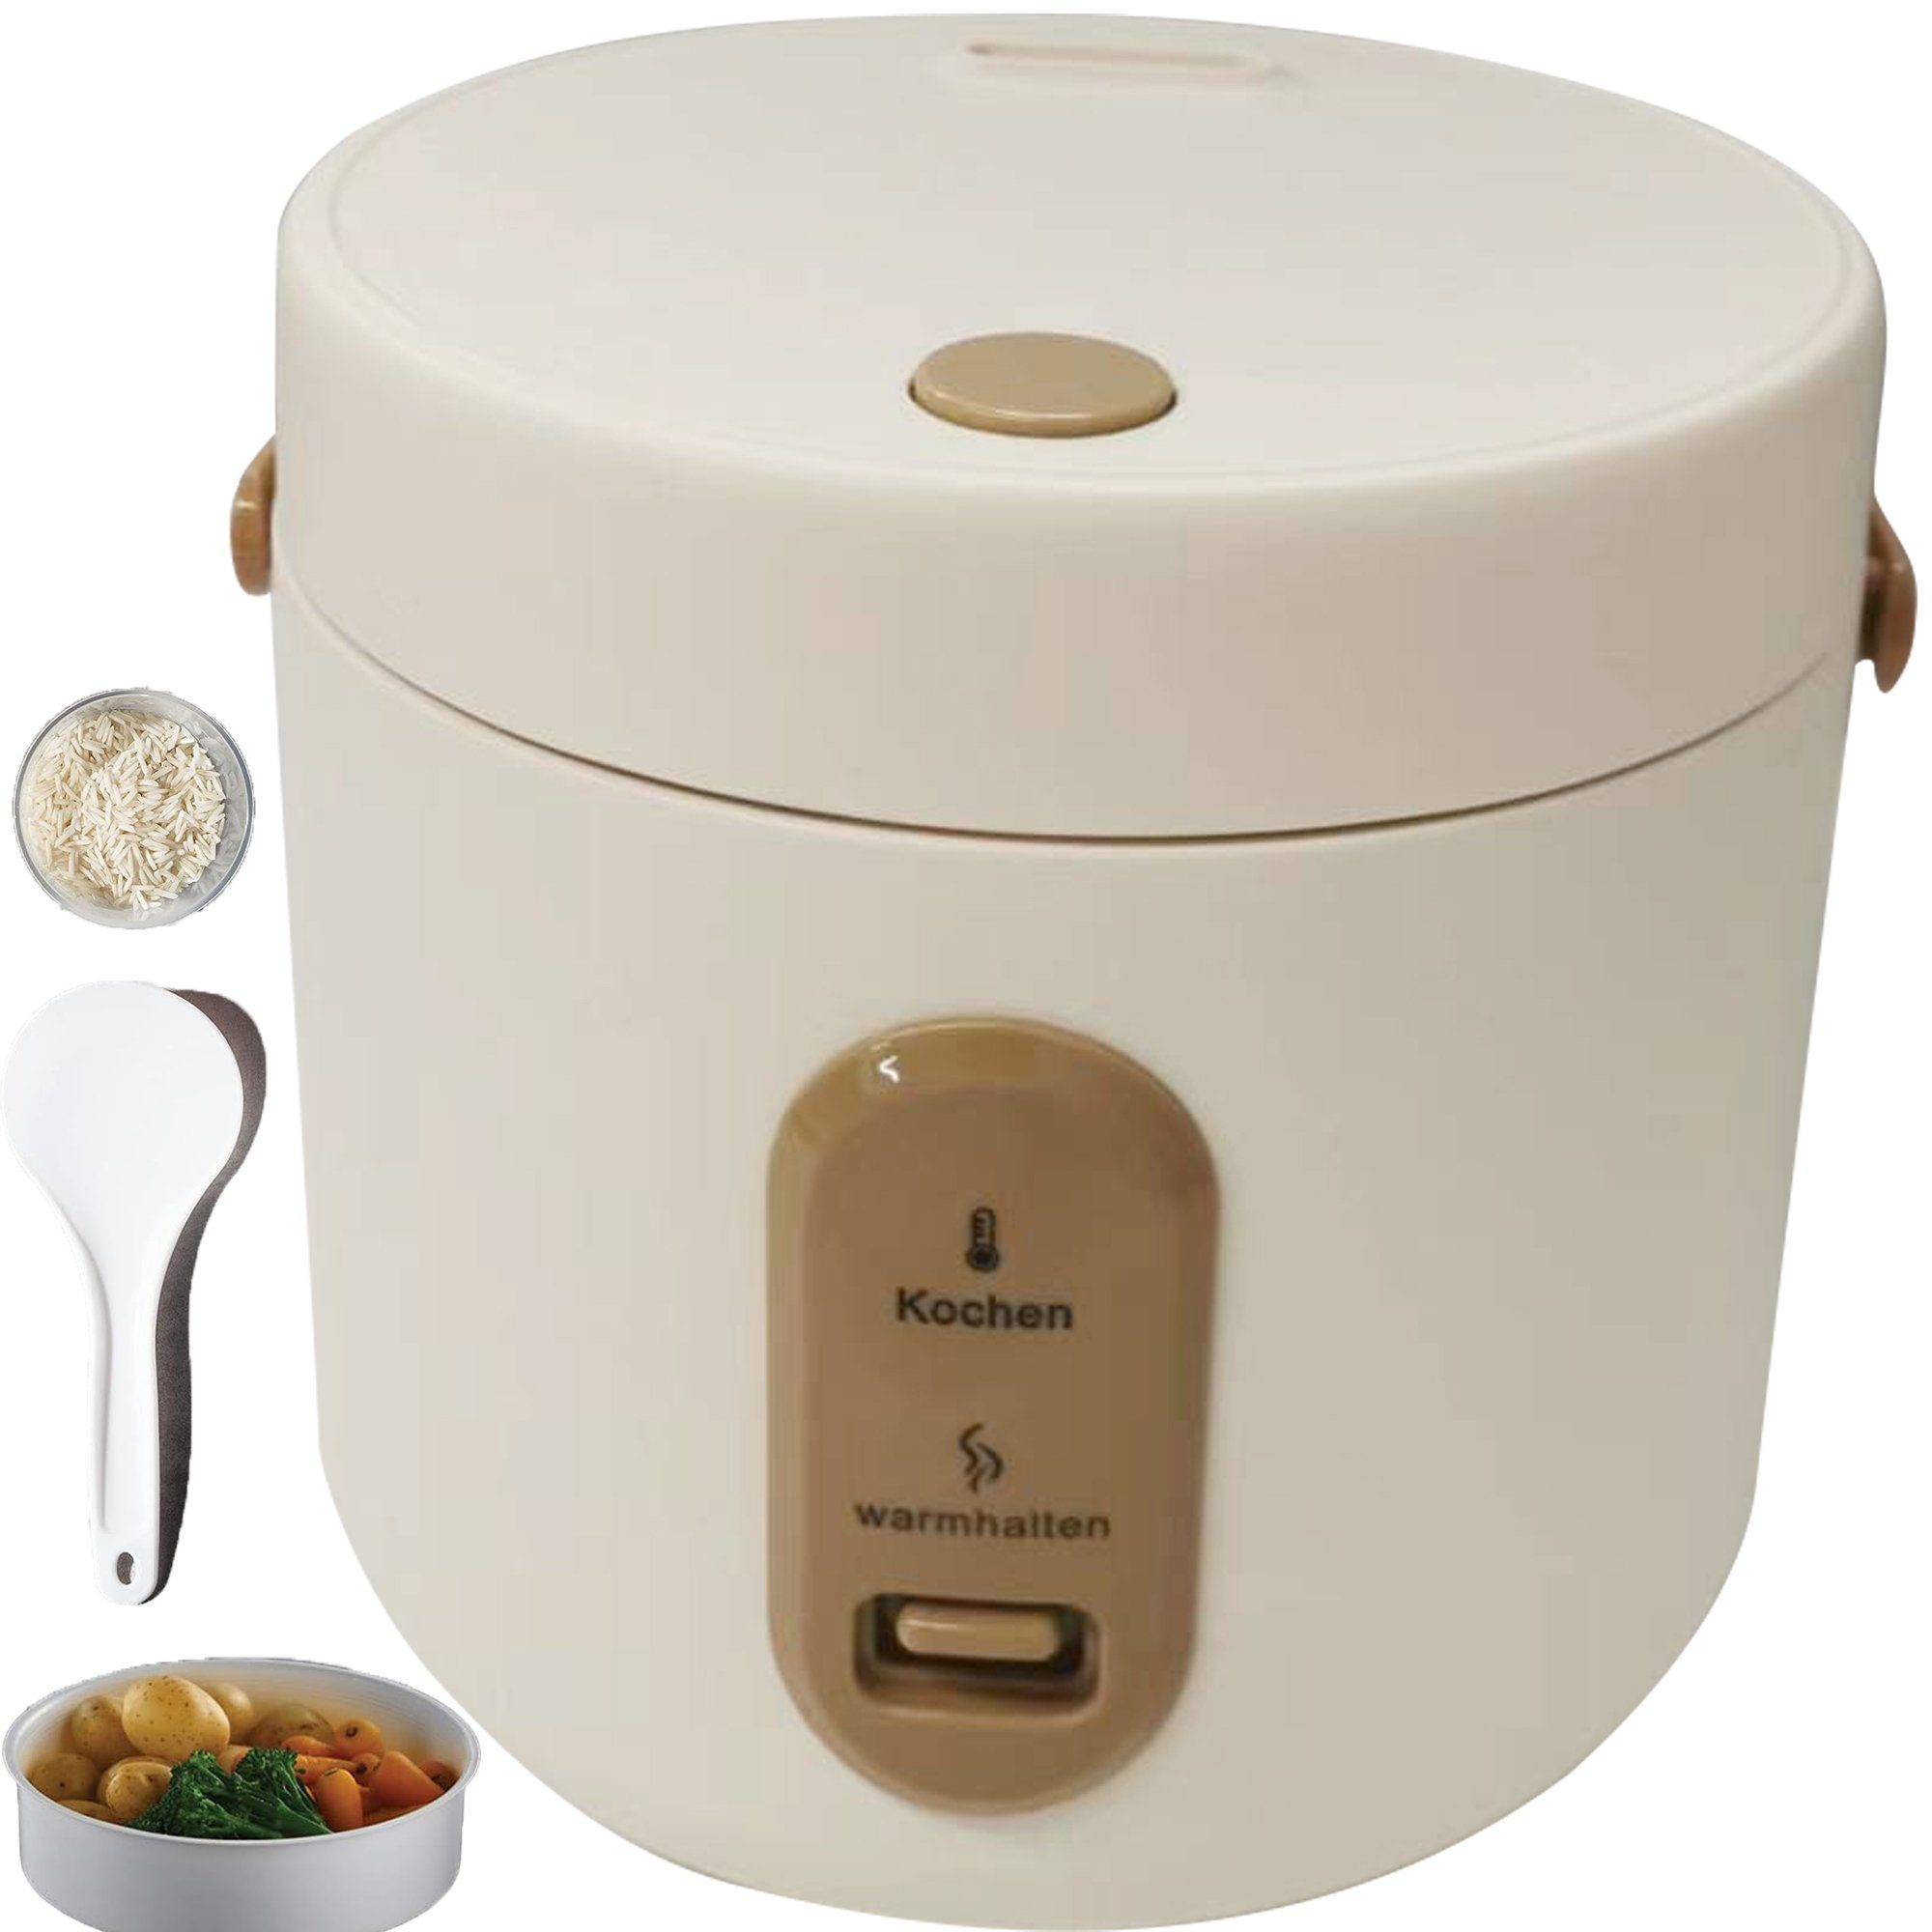 Sross Reiskocher 2L Reiskocher mit Dampfgarfunktion,Antihaft-Garen,One-Touch-Bedienung, Perfekt für 1-4 Personen zum Kochen von Reis,Fleisch,Nudeln oder Suppe